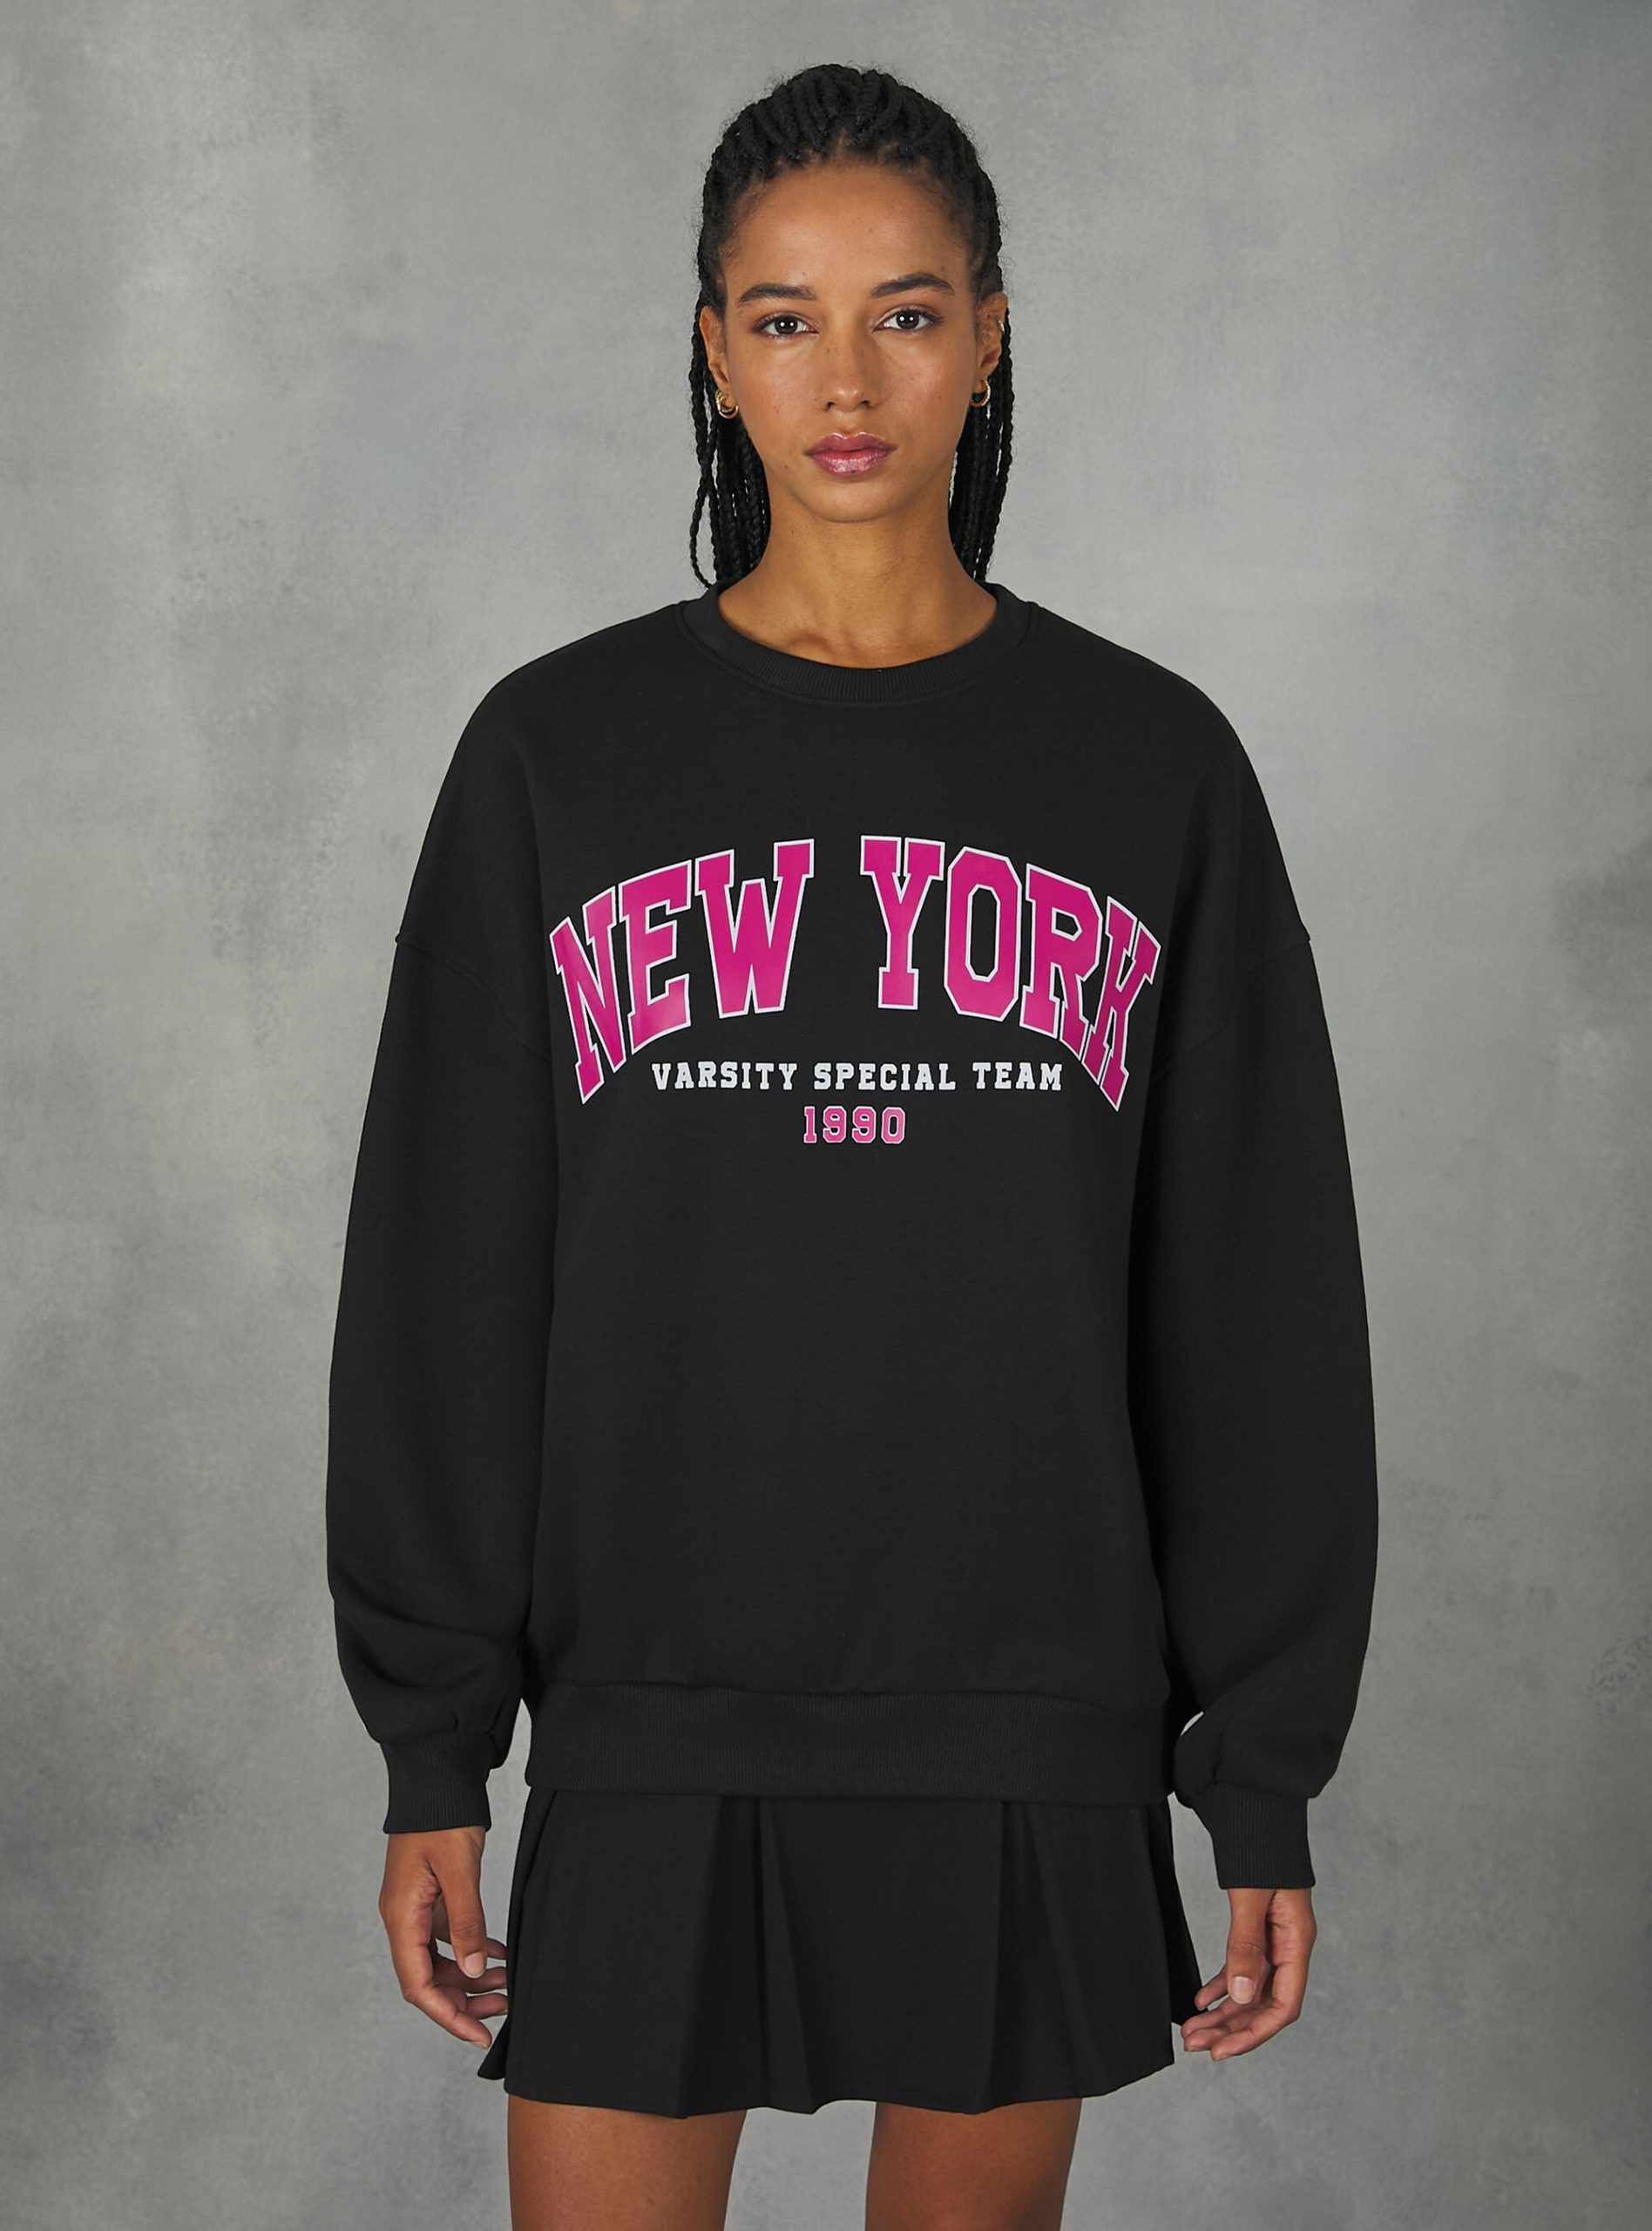 Geschäft Sweatshirts Alcott Bk1 Black Crewneck College Comfort Fit Sweatshirt Frauen – 2